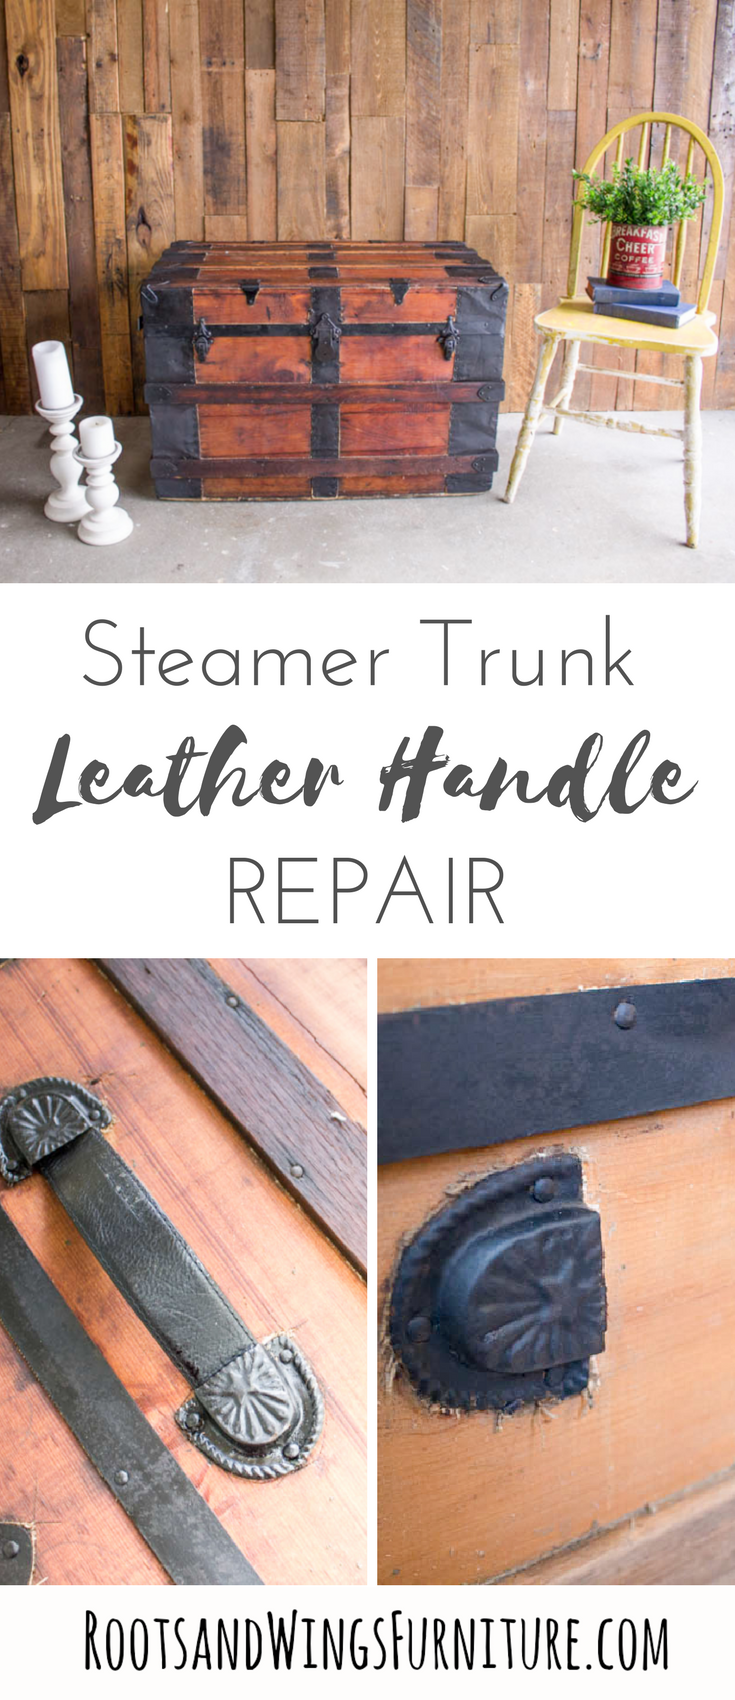 Steamer Trunk Handle Repair • Roots & Wings Furniture LLC